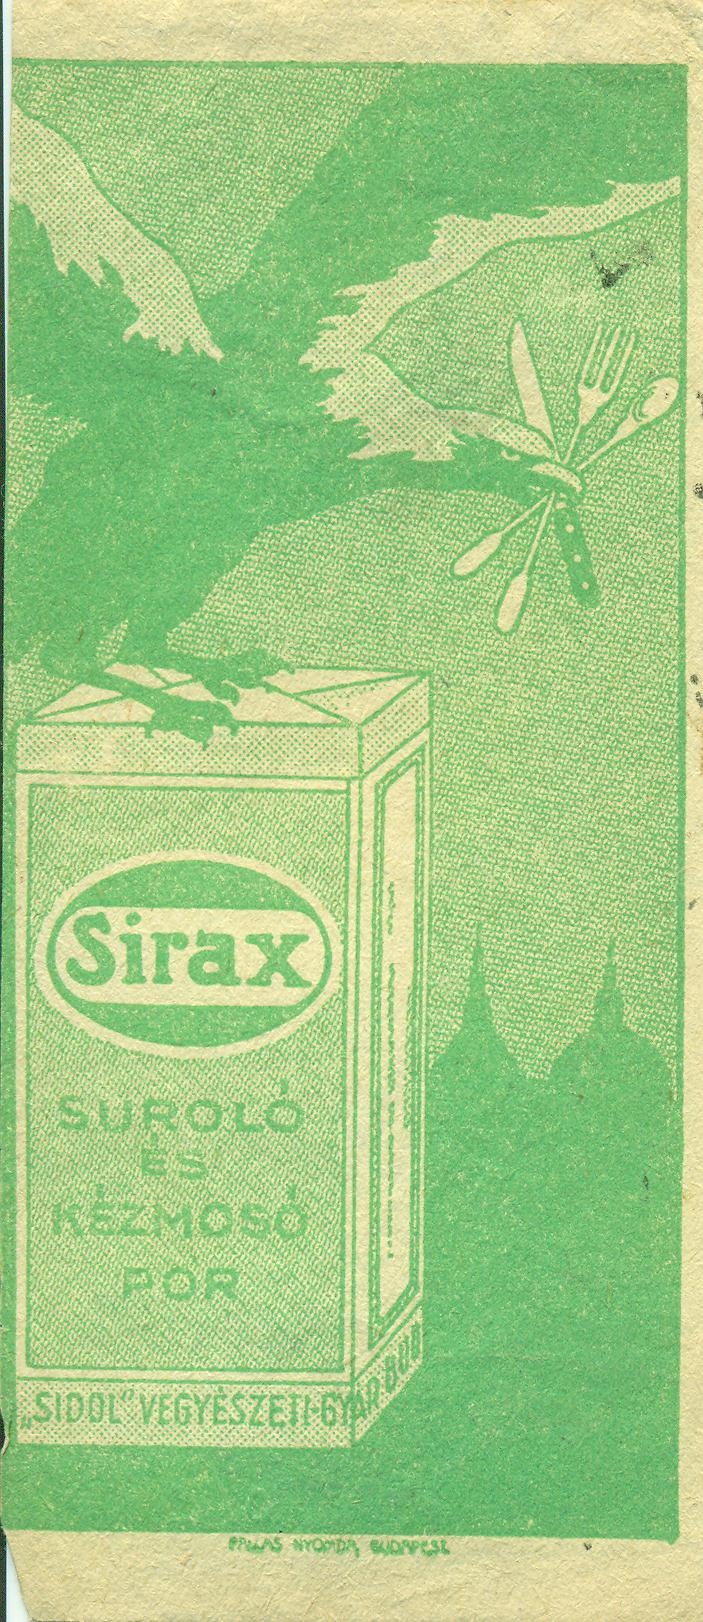 Sirax súroló és kézmosó por (Magyar Kereskedelmi és Vendéglátóipari Múzeum CC BY-NC-SA)